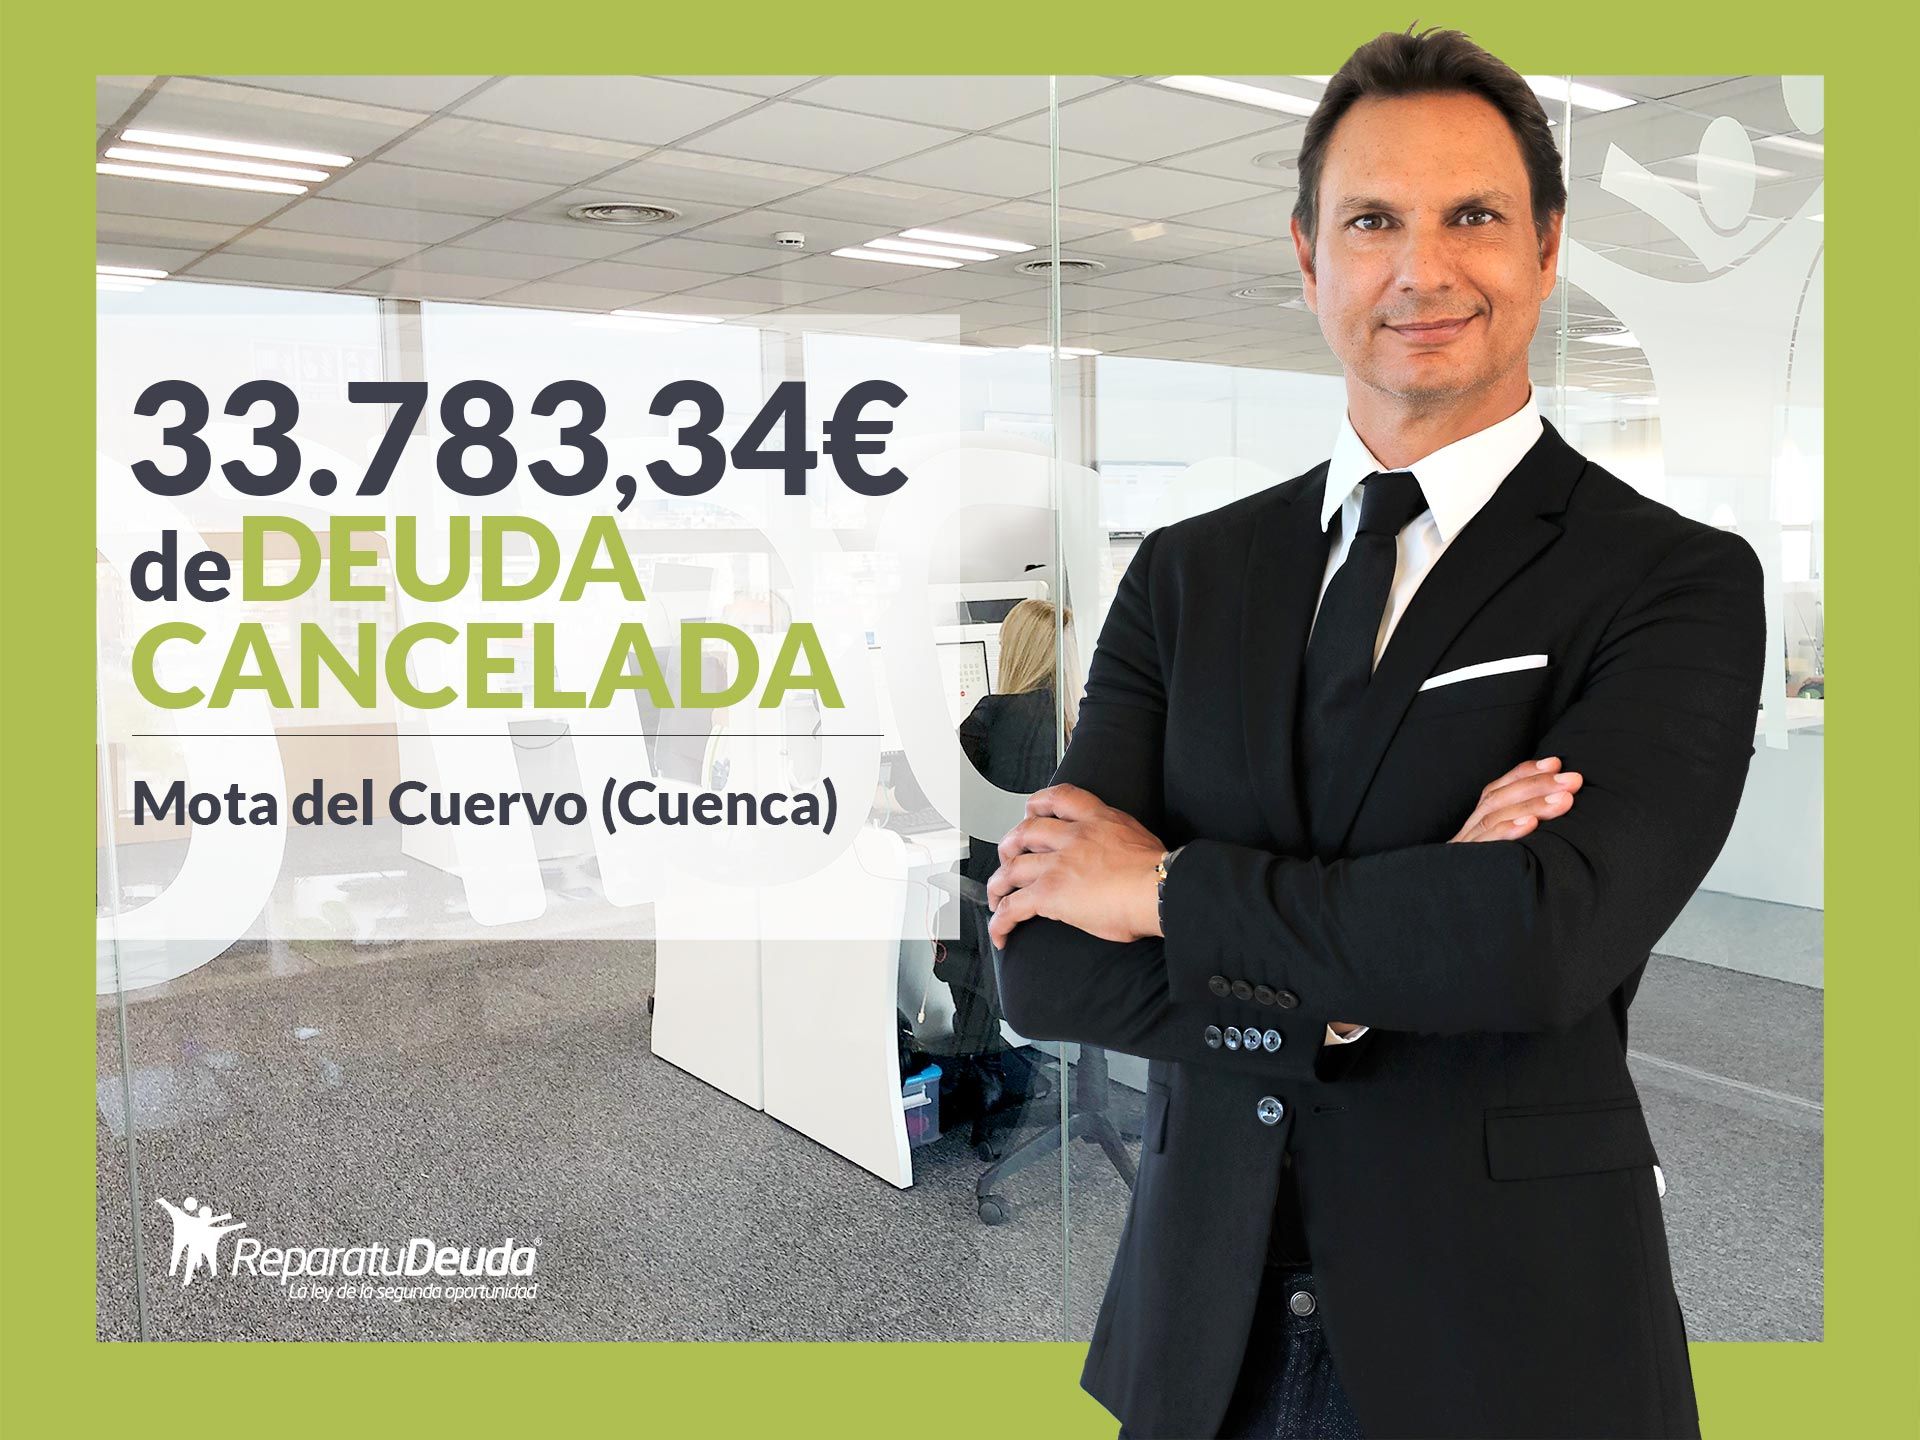 Repara tu Deuda Abogados cancela 33.783,34 ? en Mota del Cuervo (Cuenca) con la Ley de Segunda Oportunidad